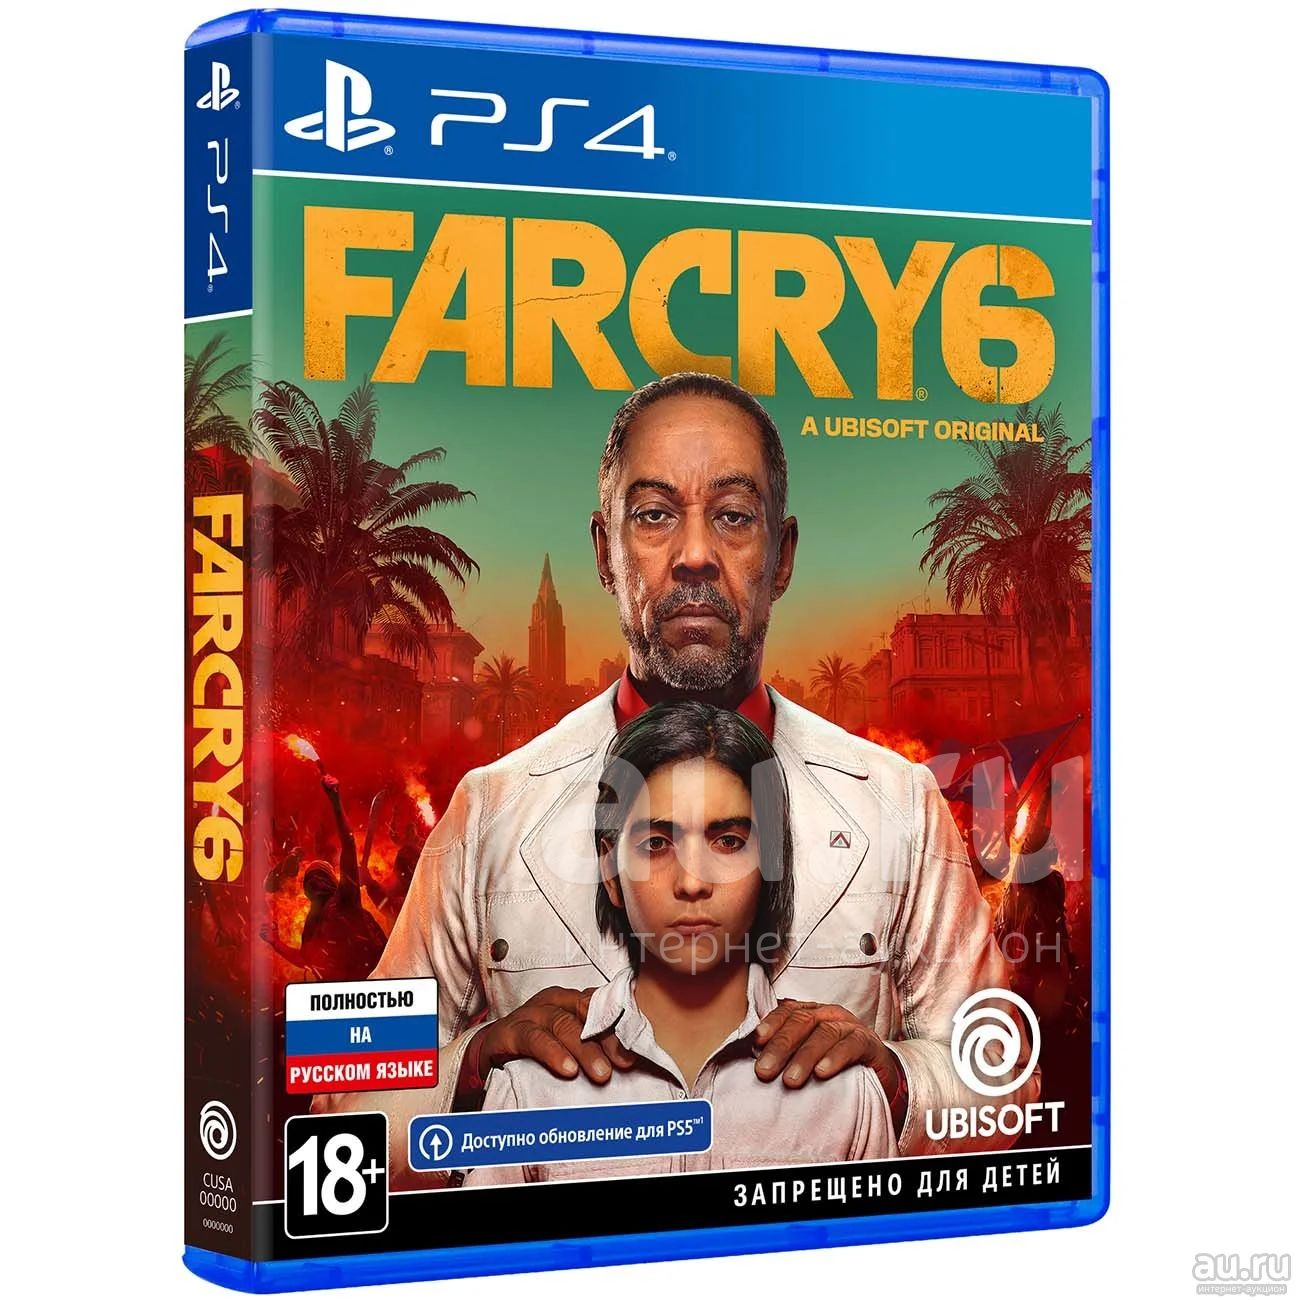 Игра far xbox. Xbox Series x far Cry 6. Xbox one far Cry 6 русская версия диск. Xbox far Cry 6 русская версия диск. Far Cry 6 ps4 диск.